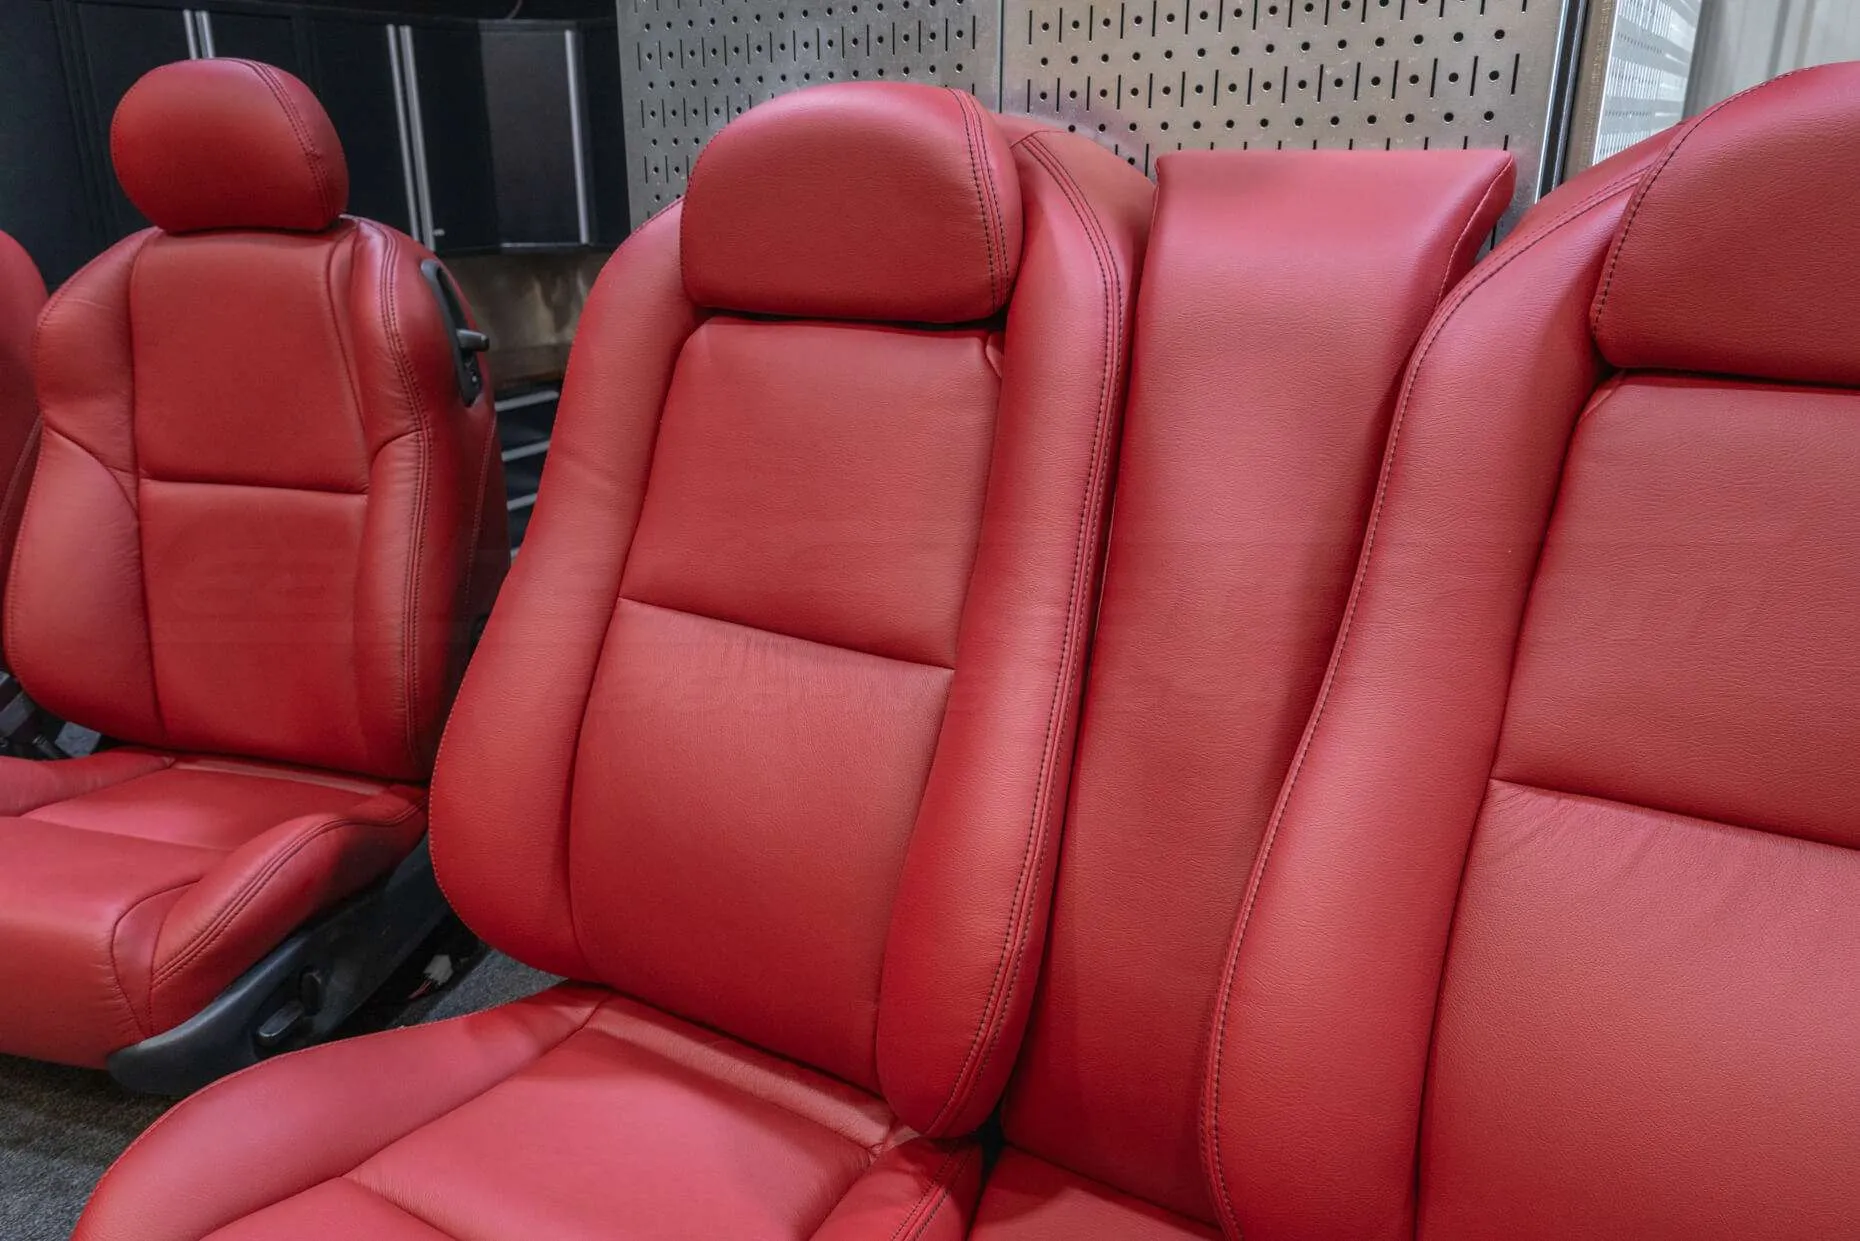 Backrest secton of rear seats